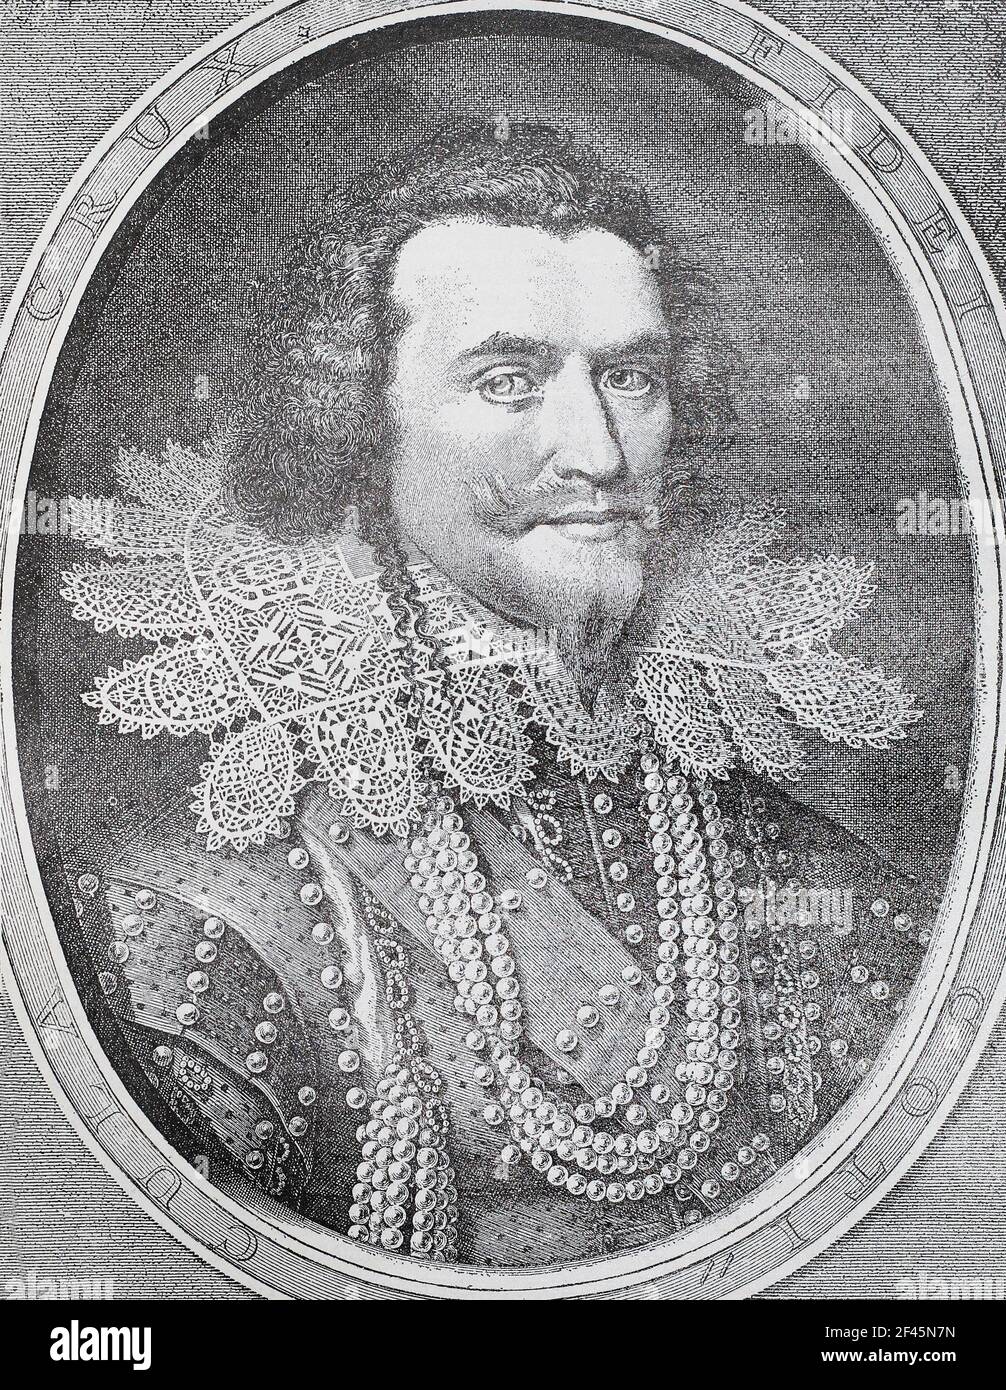 George Villiers, 1st Duke of Buckingham (1592 – 1628), war ein englischer Höfling, Staatsmann und Mäzen der Künste. Er war ein Favorit und möglicherweise auch ein Liebhaber von König James I. von England. Buckingham blieb die ersten drei Jahre der Regierungszeit von James' Sohn, König Karl I., auf dem Höhepunkt königlicher Gunst, bis ihn ein verärgerter Armeeoffizier ermordete. Gravur von 1626. Stockfoto